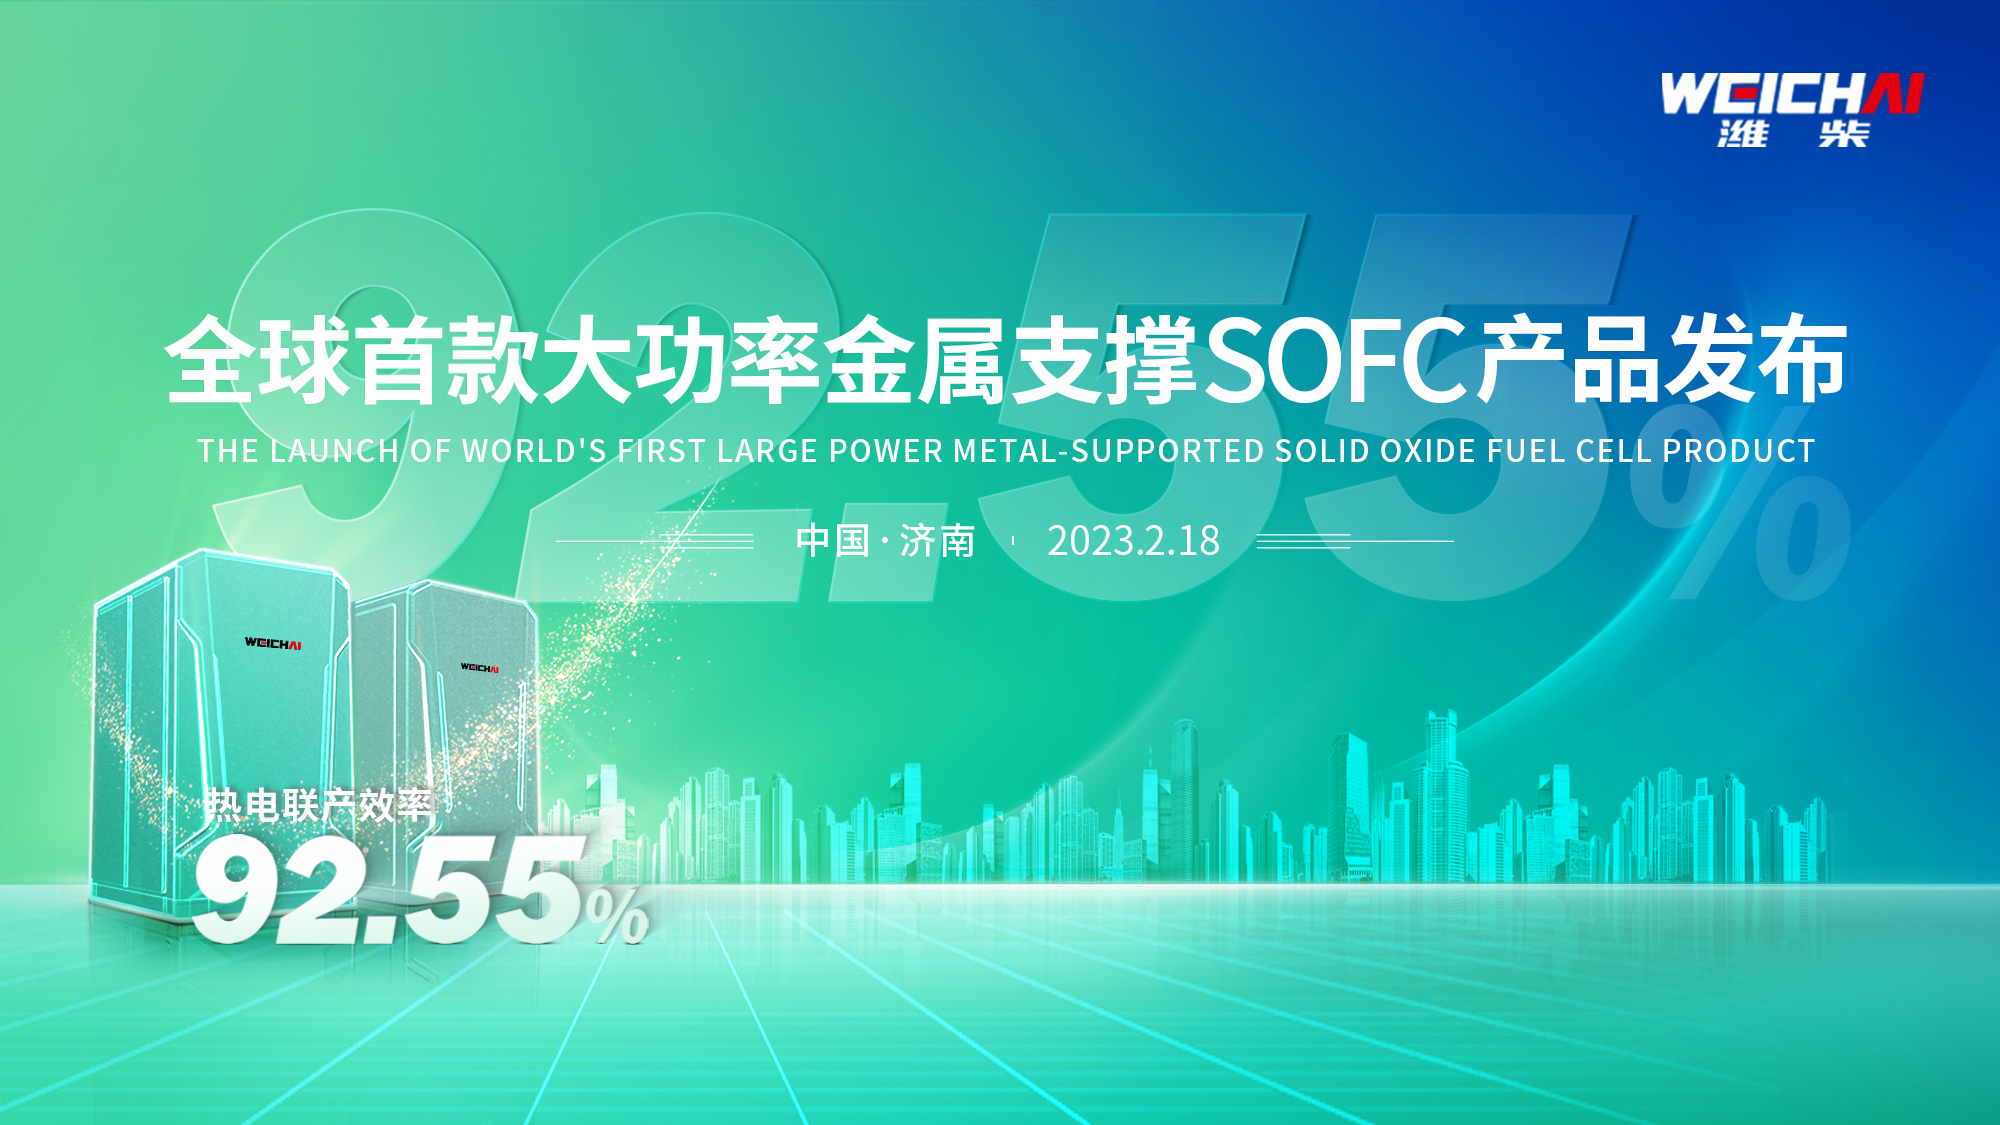 【铁臂直播】全球首款大功率金属支撑SOFC产品发布